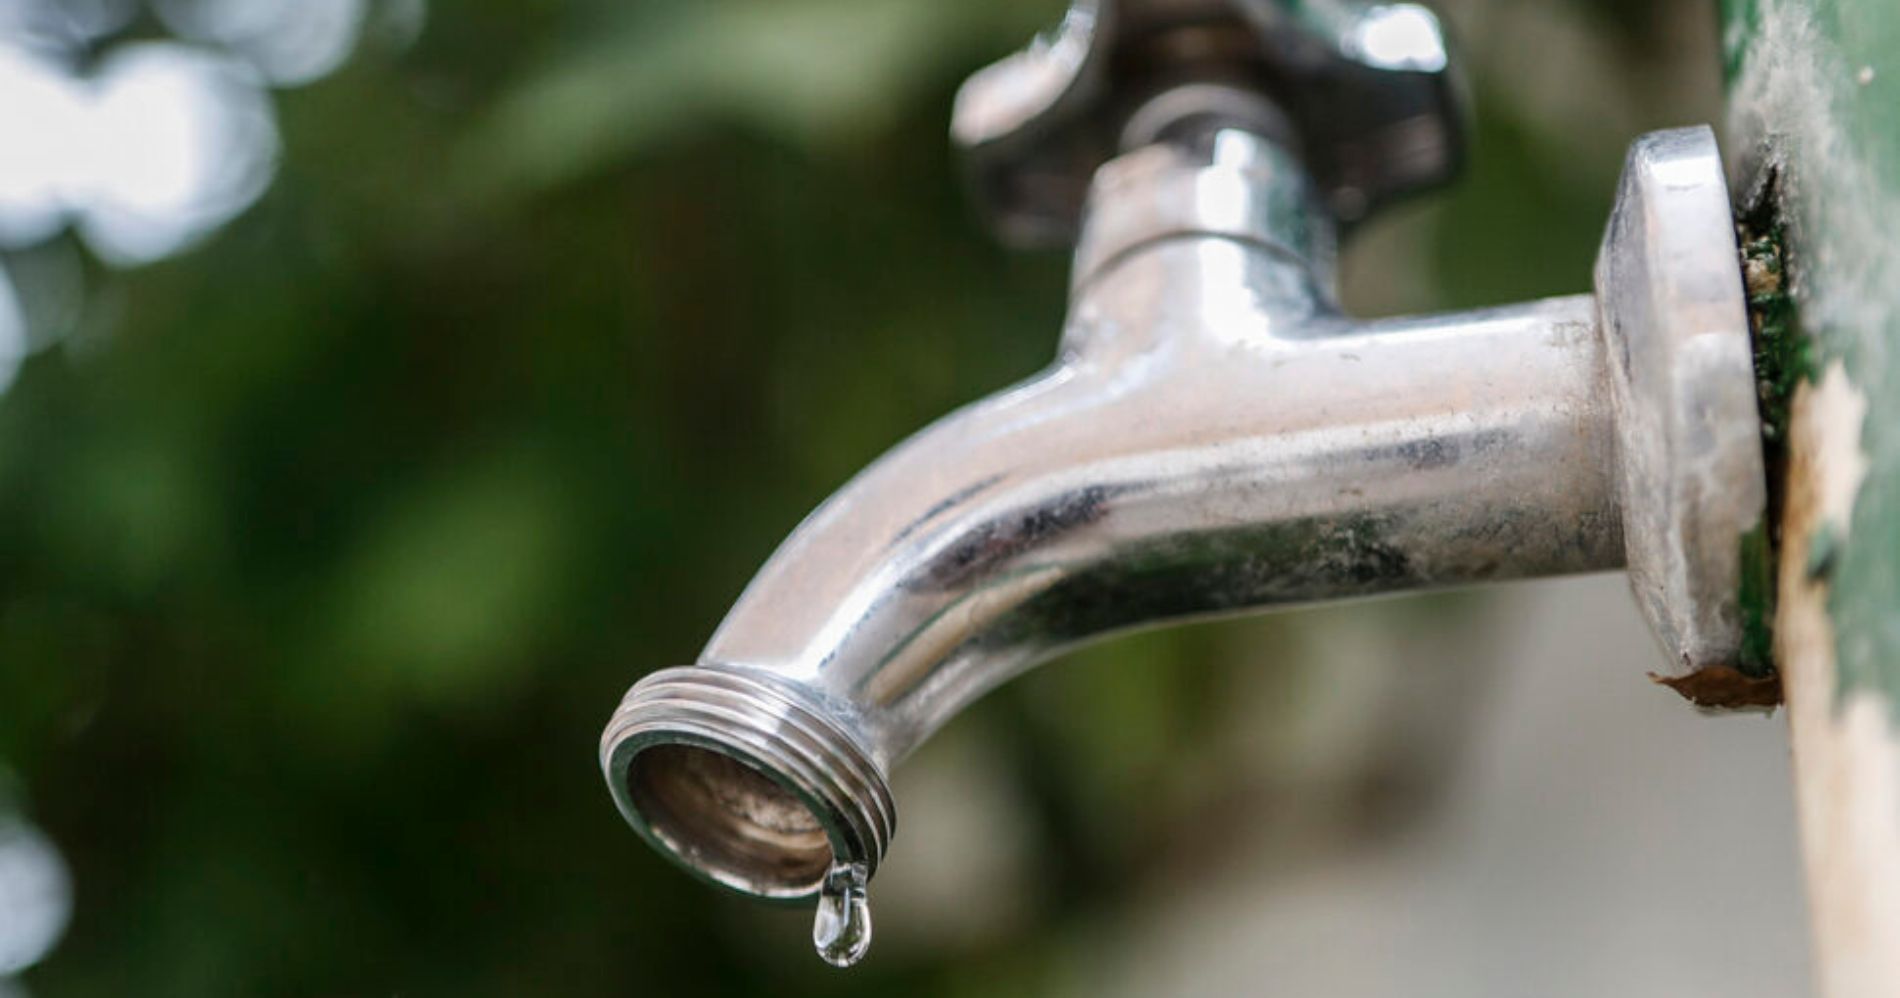 Mais de 40 bairros em Curitiba e RMC terão fornecimento de água interrompido; confira os locais